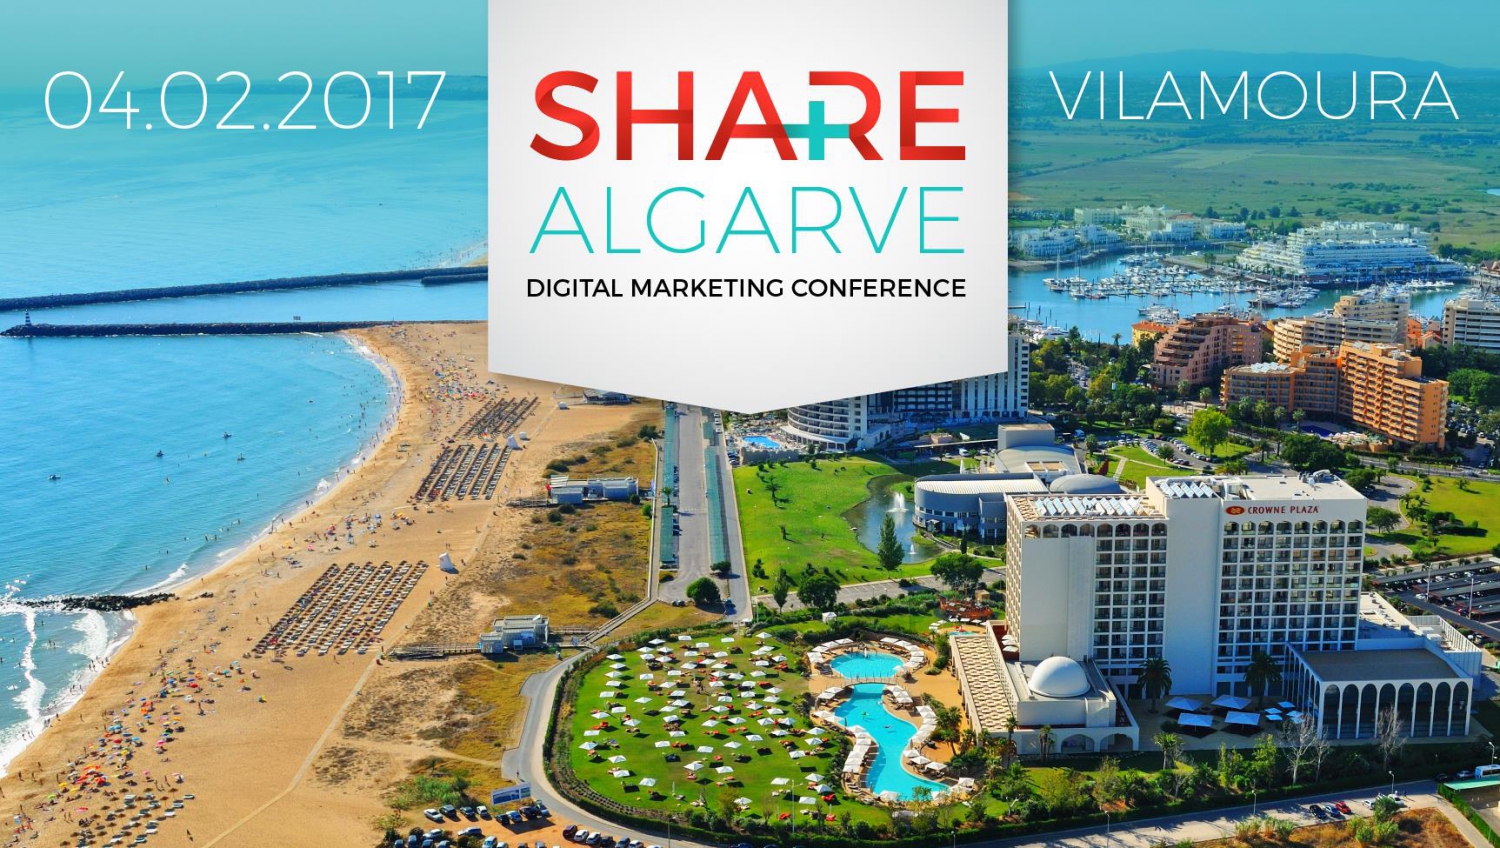 Share Algarve Digital Marketing Conference